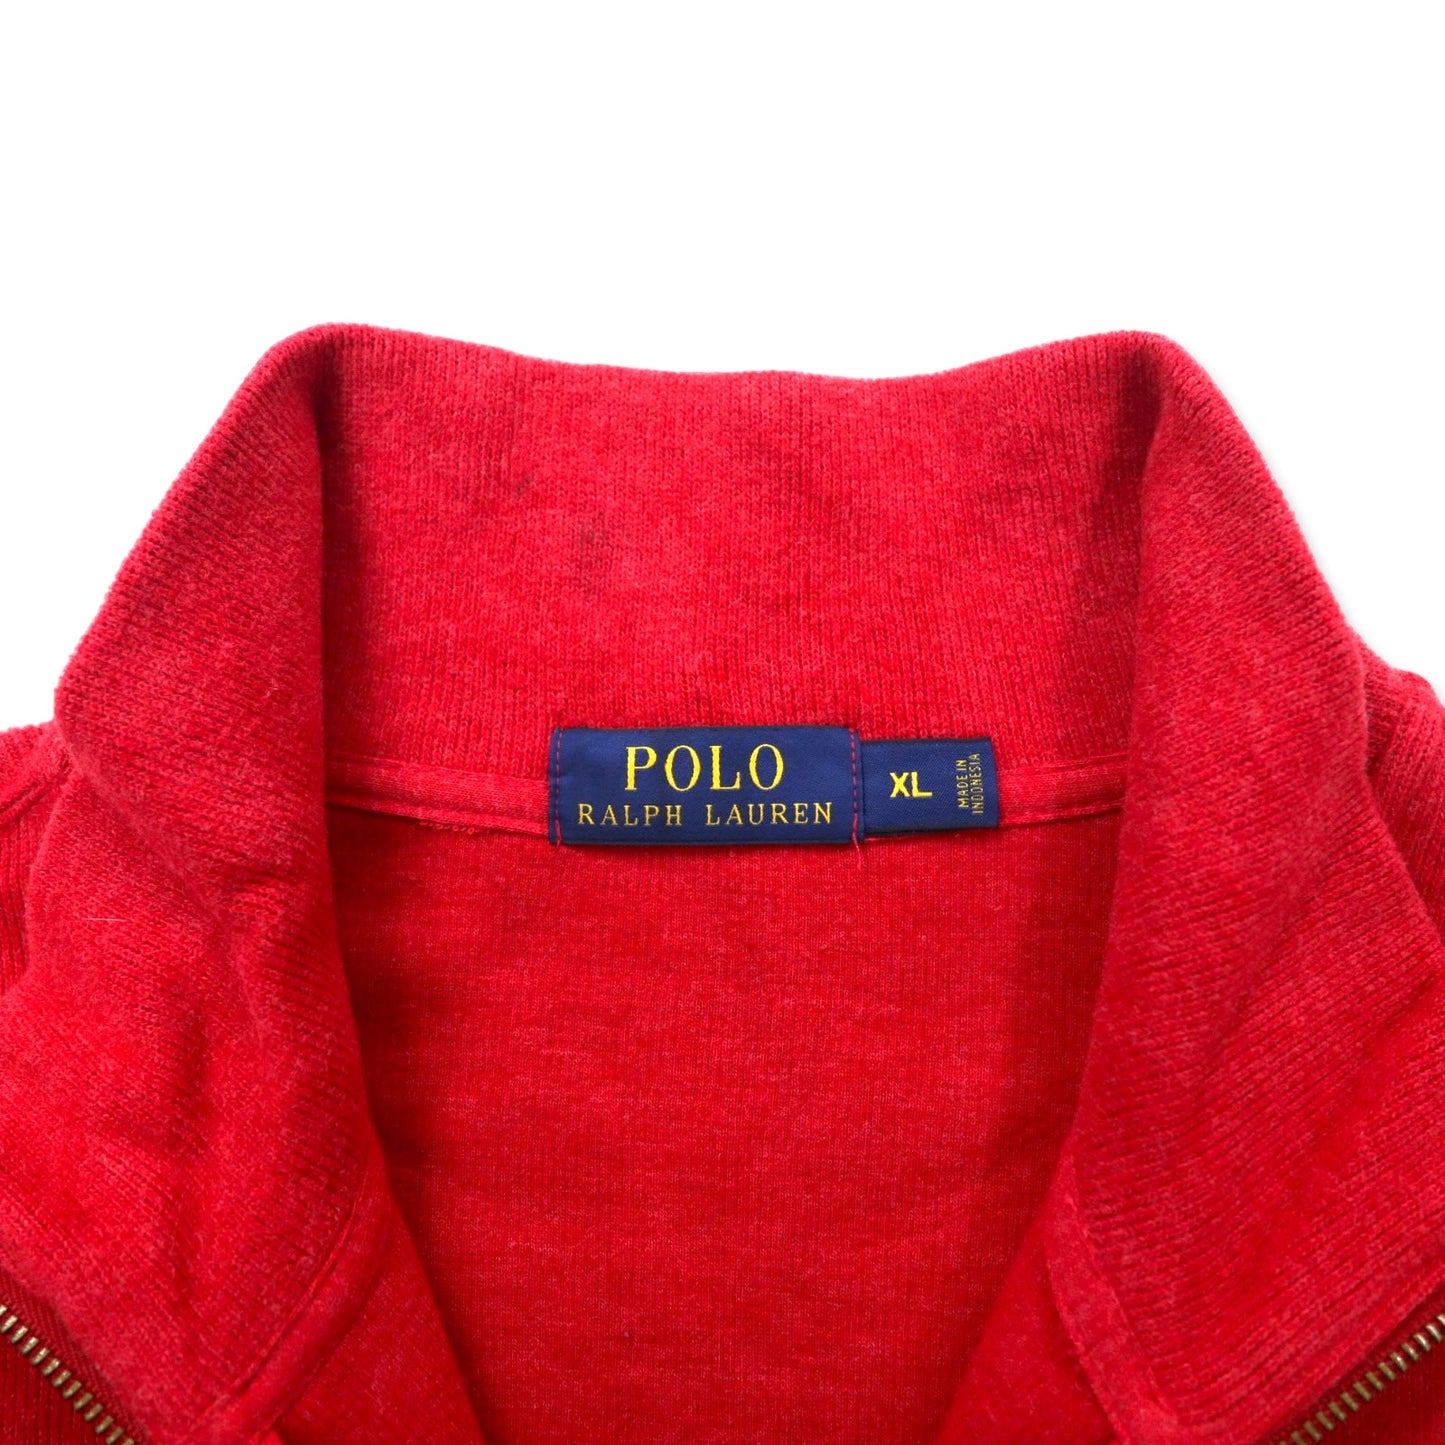 POLO RALPH LAUREN ハーフジップ スウェット XL レッド コットン スモールポニー刺繍 ビッグサイズ